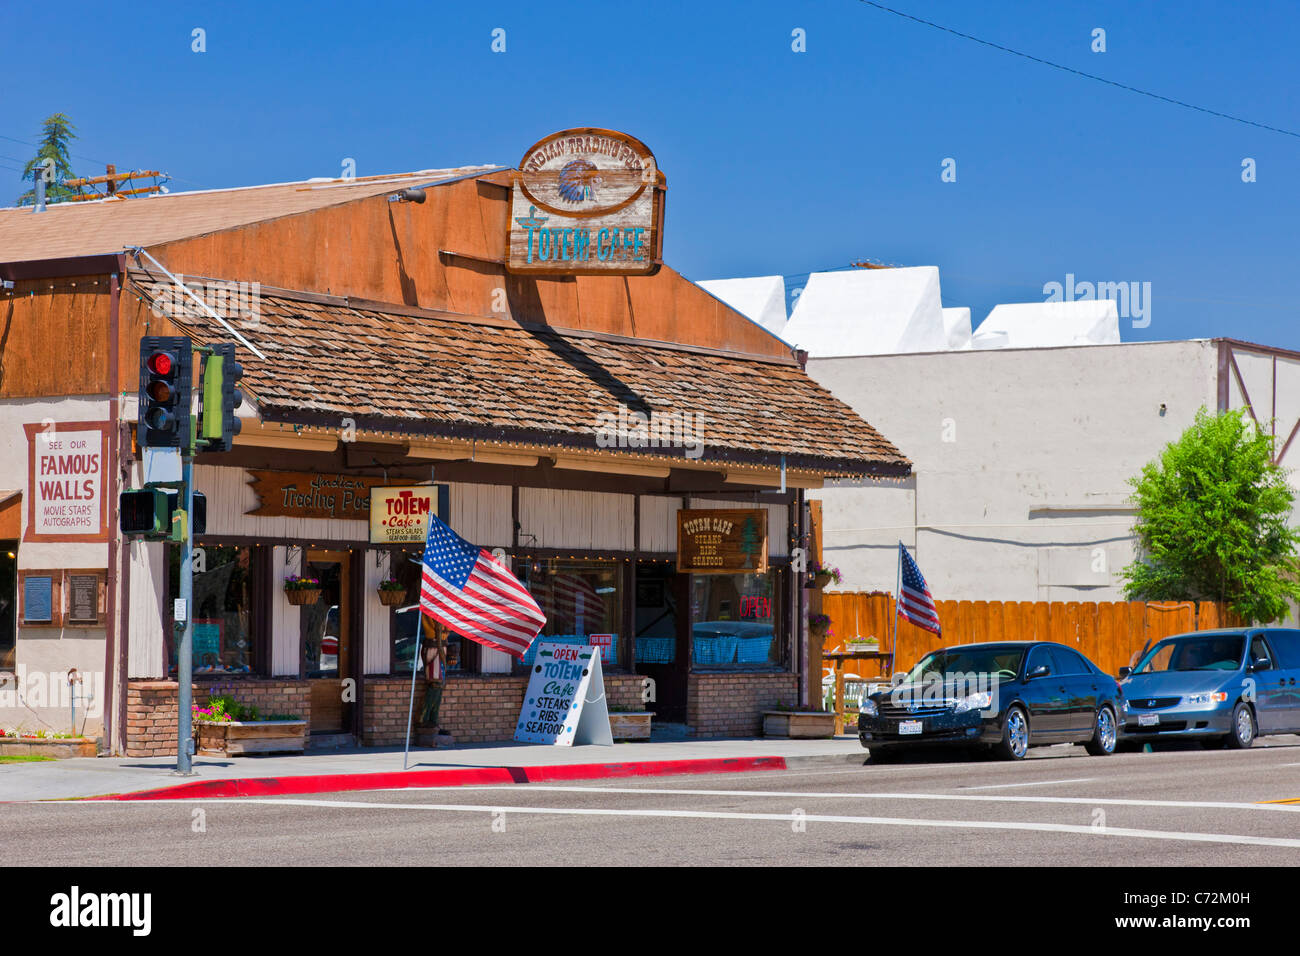 Indian Trading Post Totem Cafe sur la rue Main, Lone Pine dans la vallée d'Owens, à l'est de la Sierra Nevada, en Californie aux États-Unis. JMH5321 Banque D'Images